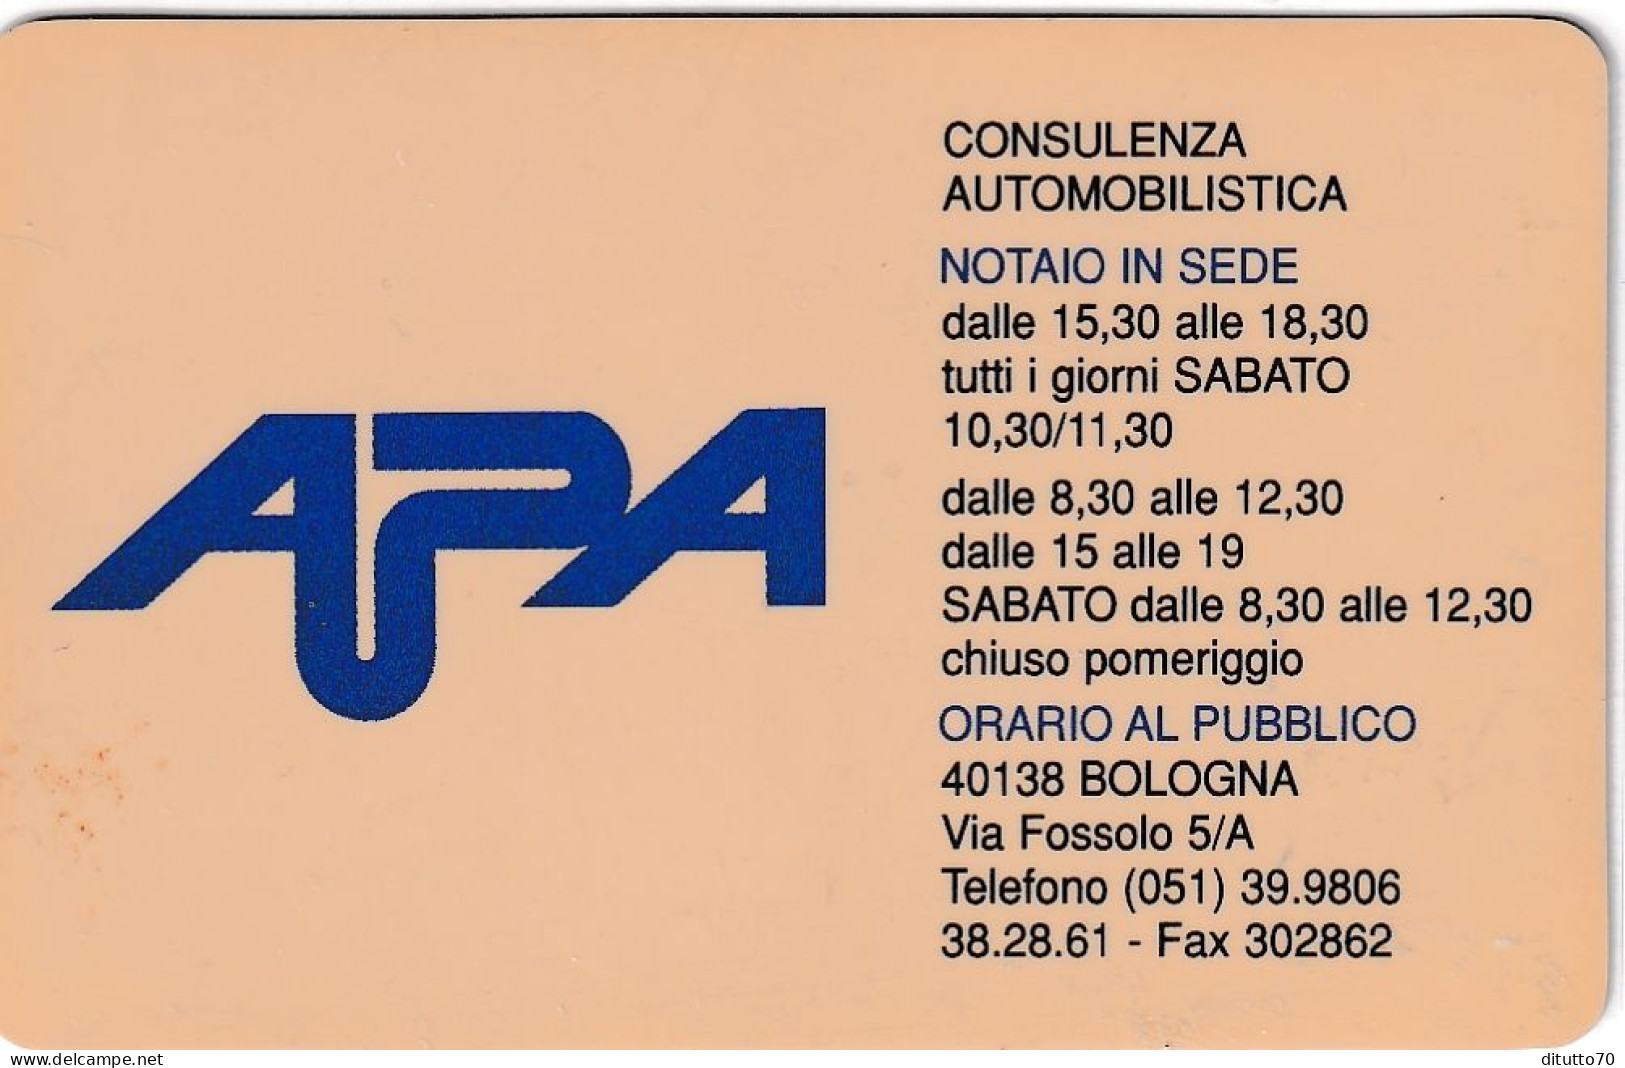 Calendarietto - Apa - Consulenza Automobilistica - Bologna - Anno 1998 - Small : 1991-00